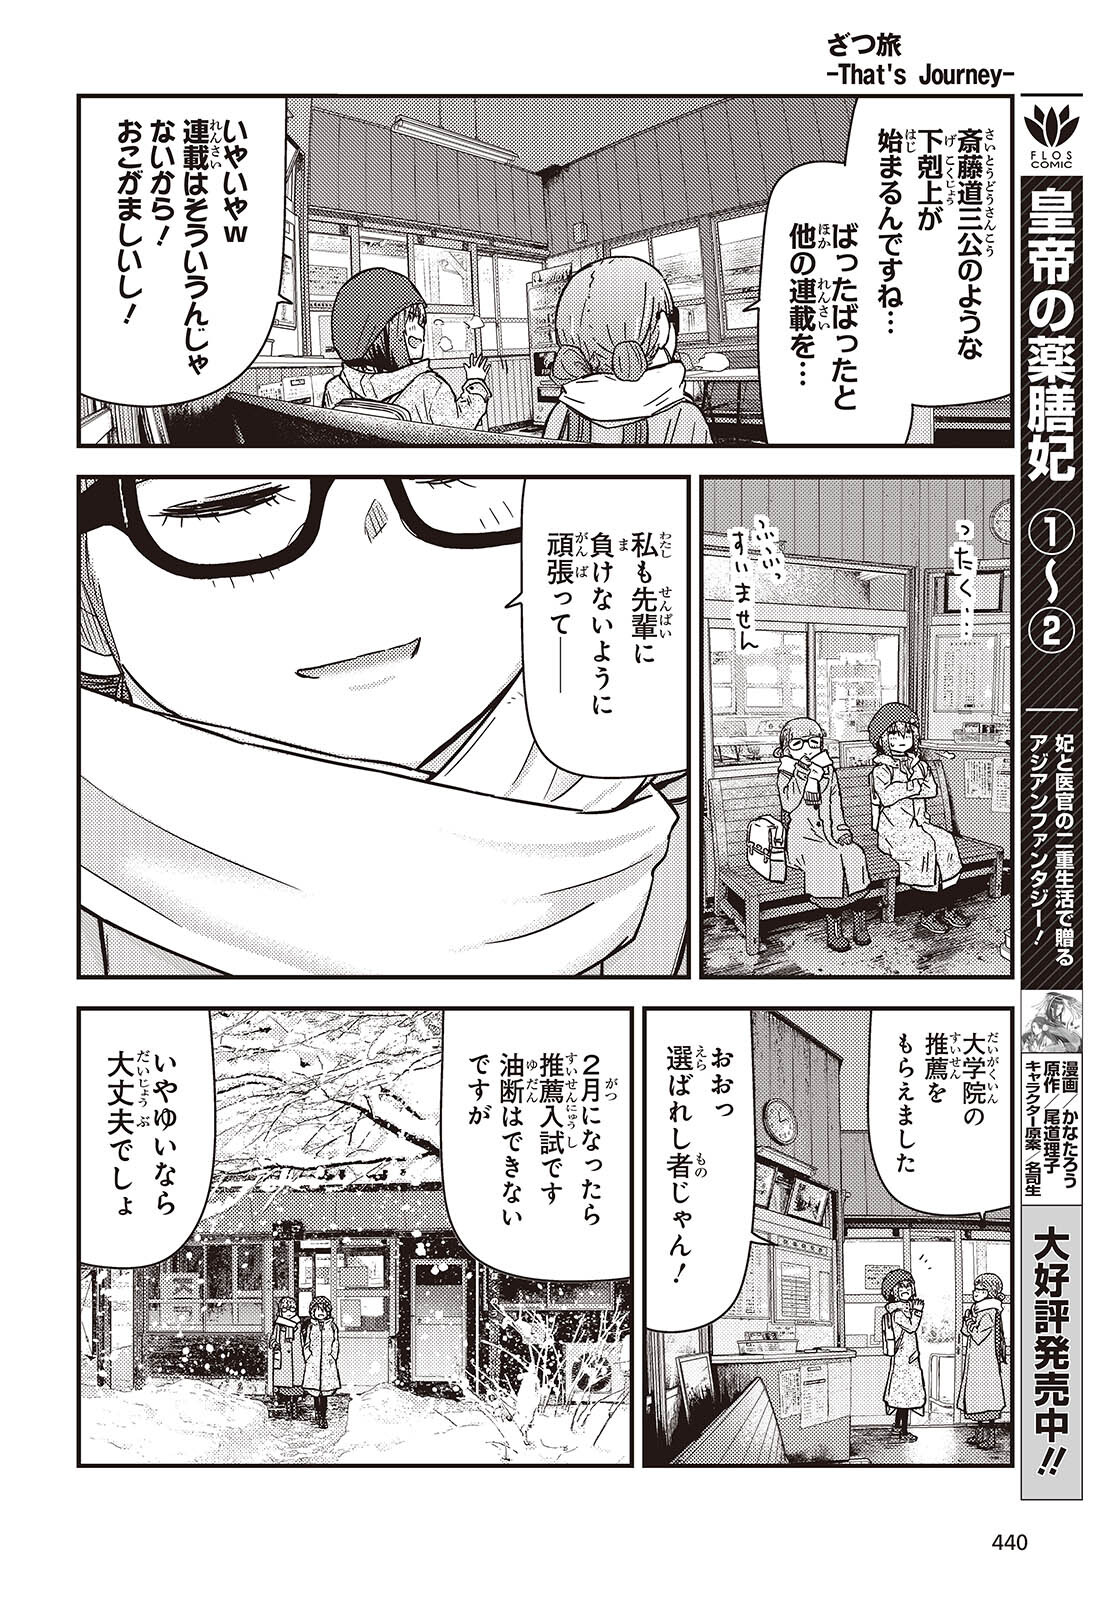 ざつ旅-That’s Journey- 第36話 - Page 12